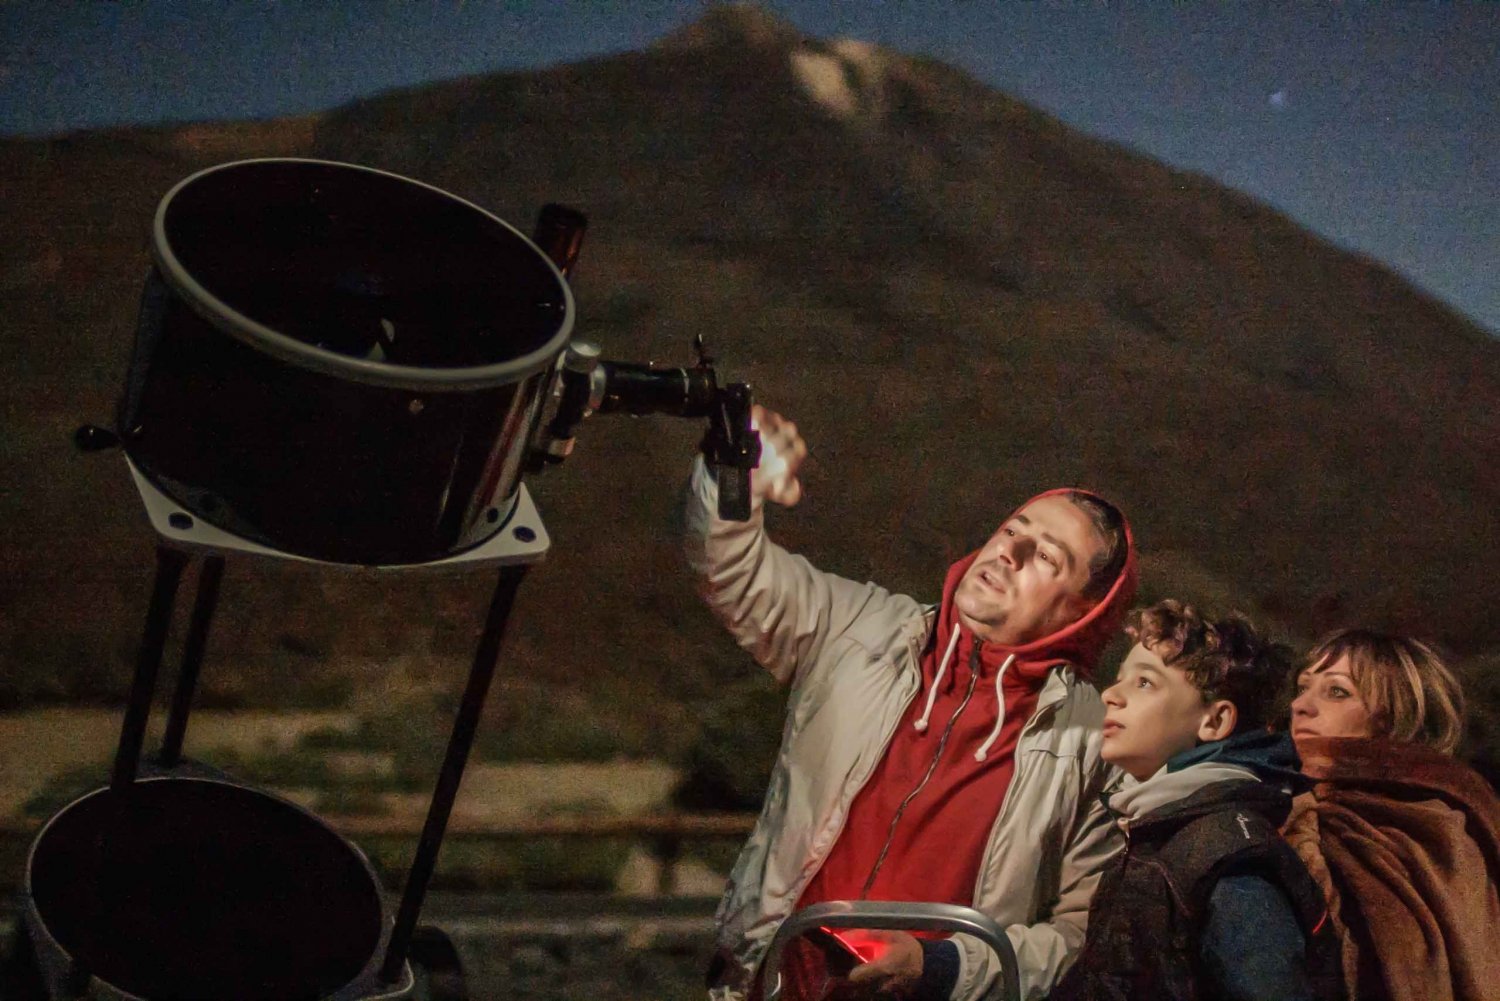 Parque Nacional del Teide: Excursión guiada para observar las estrellas con el Gran Telescopio